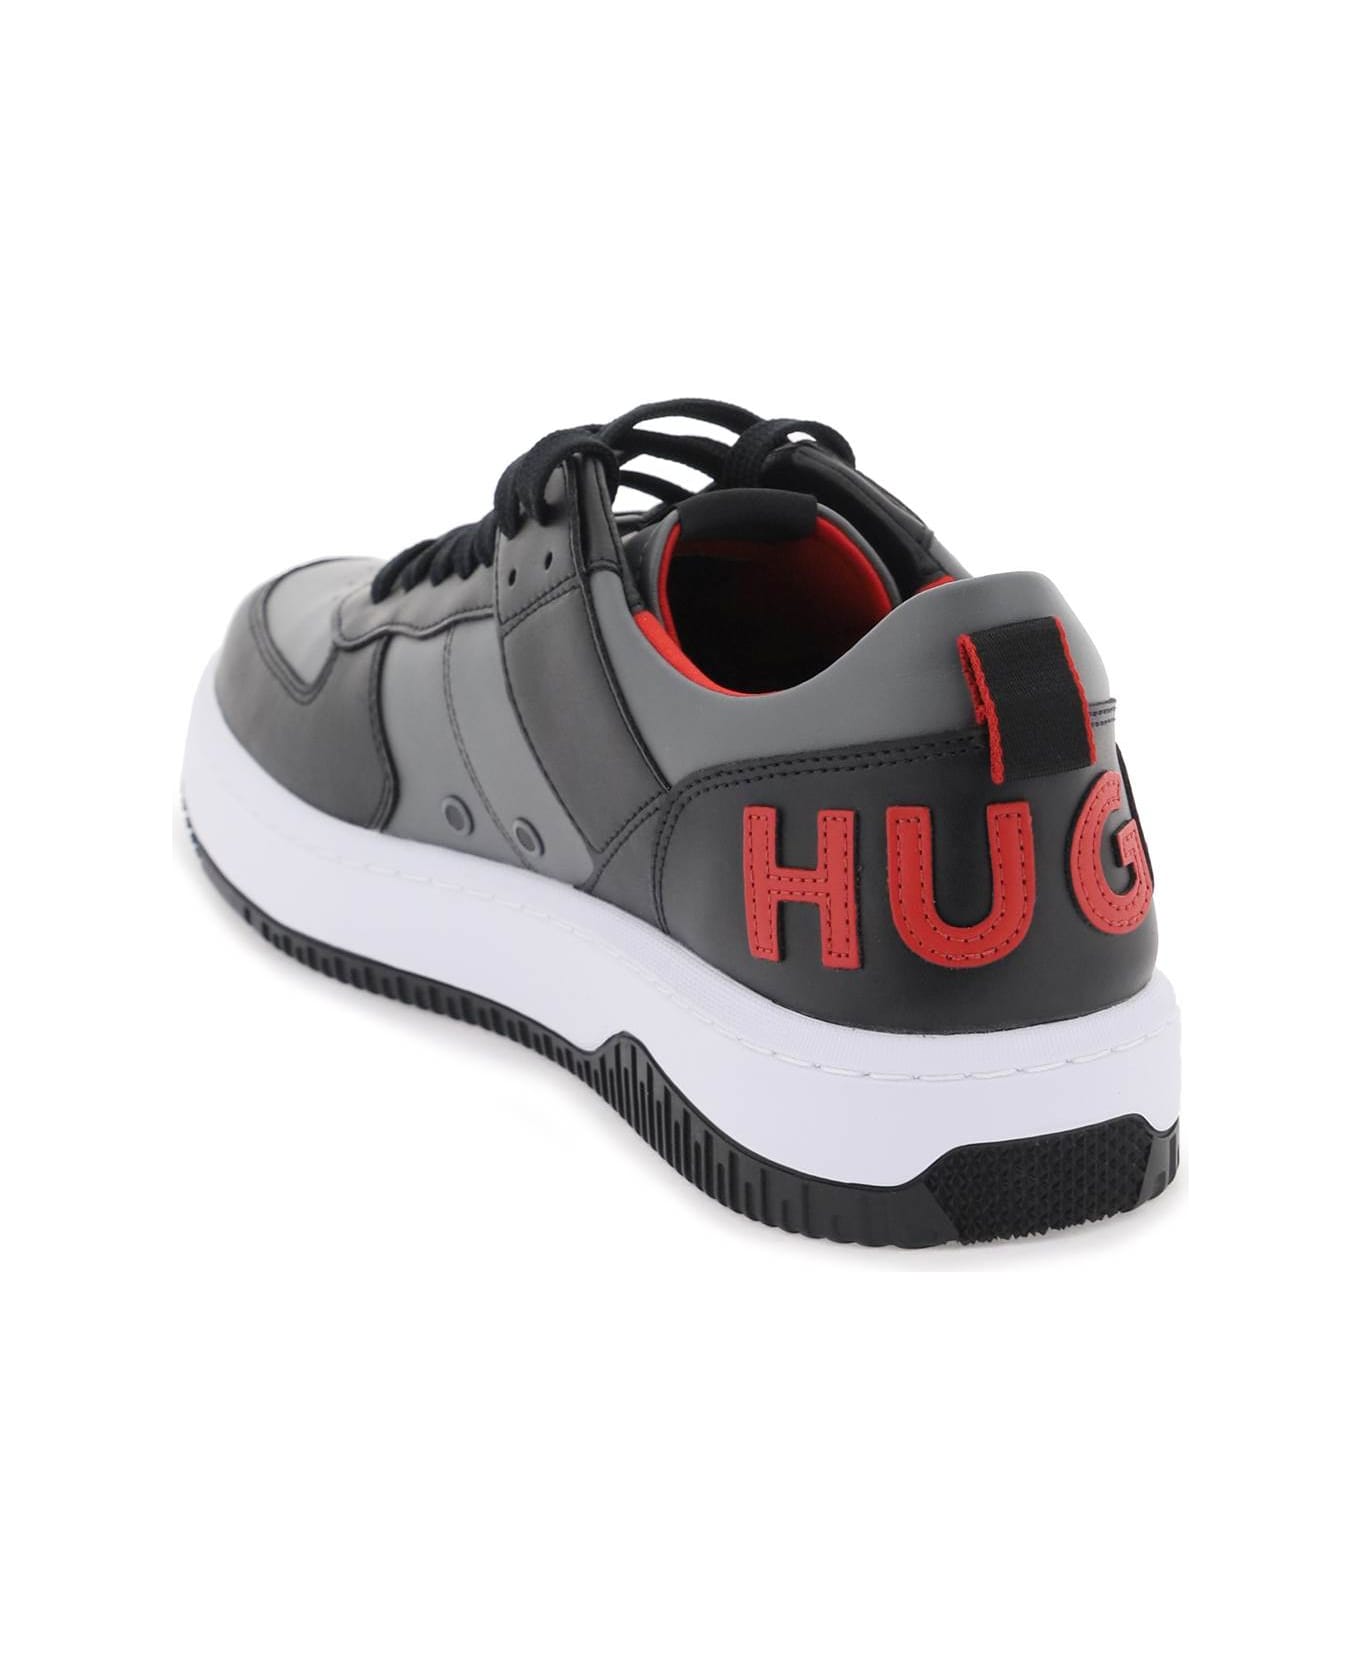 Hugo Boss Kilian Sneakers - OPEN GREY (Grey)